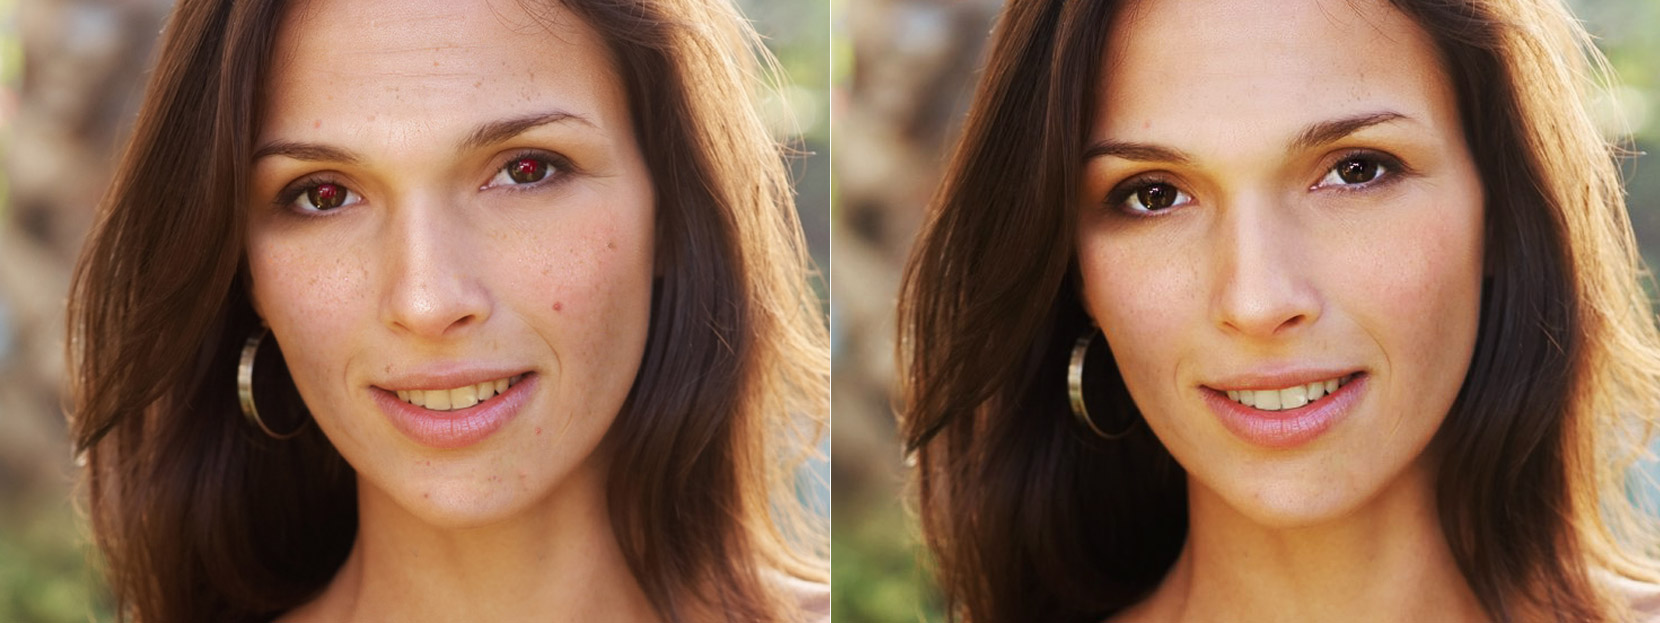 Лицо до и после ретуши на Makeup.pho.to